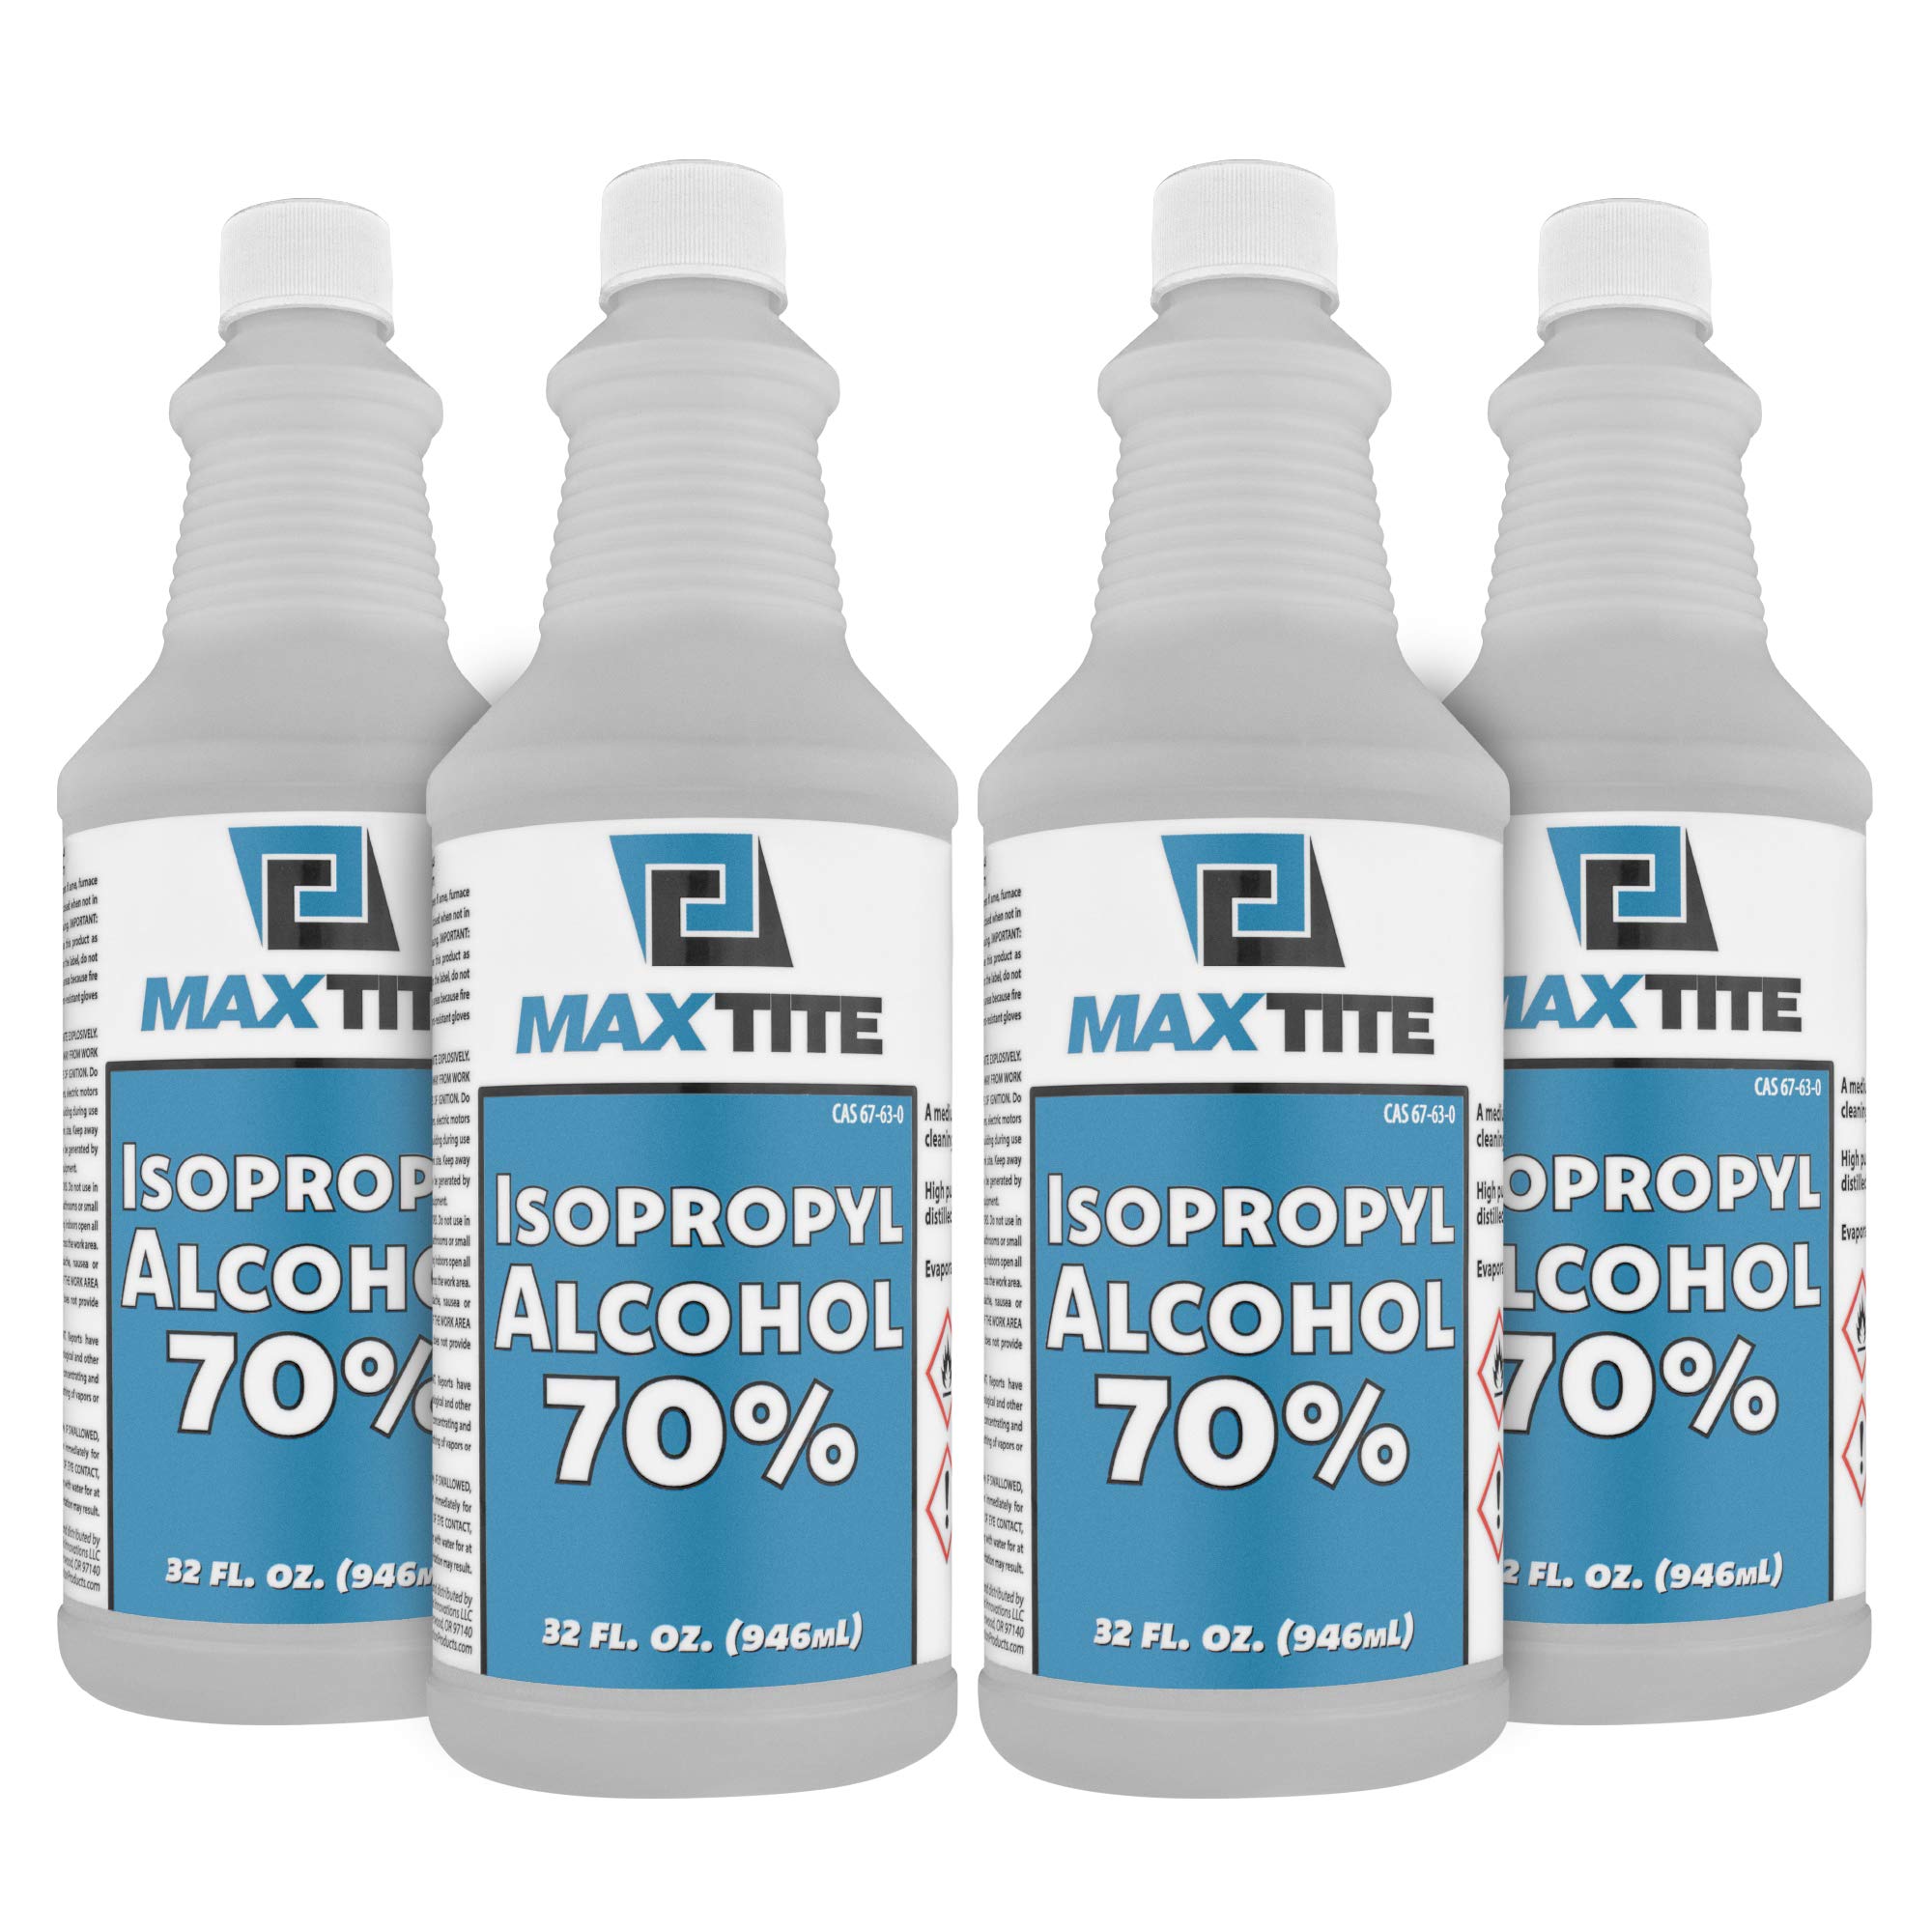 MaxTite आइसोप्रोपिल अल्कोहल 70%